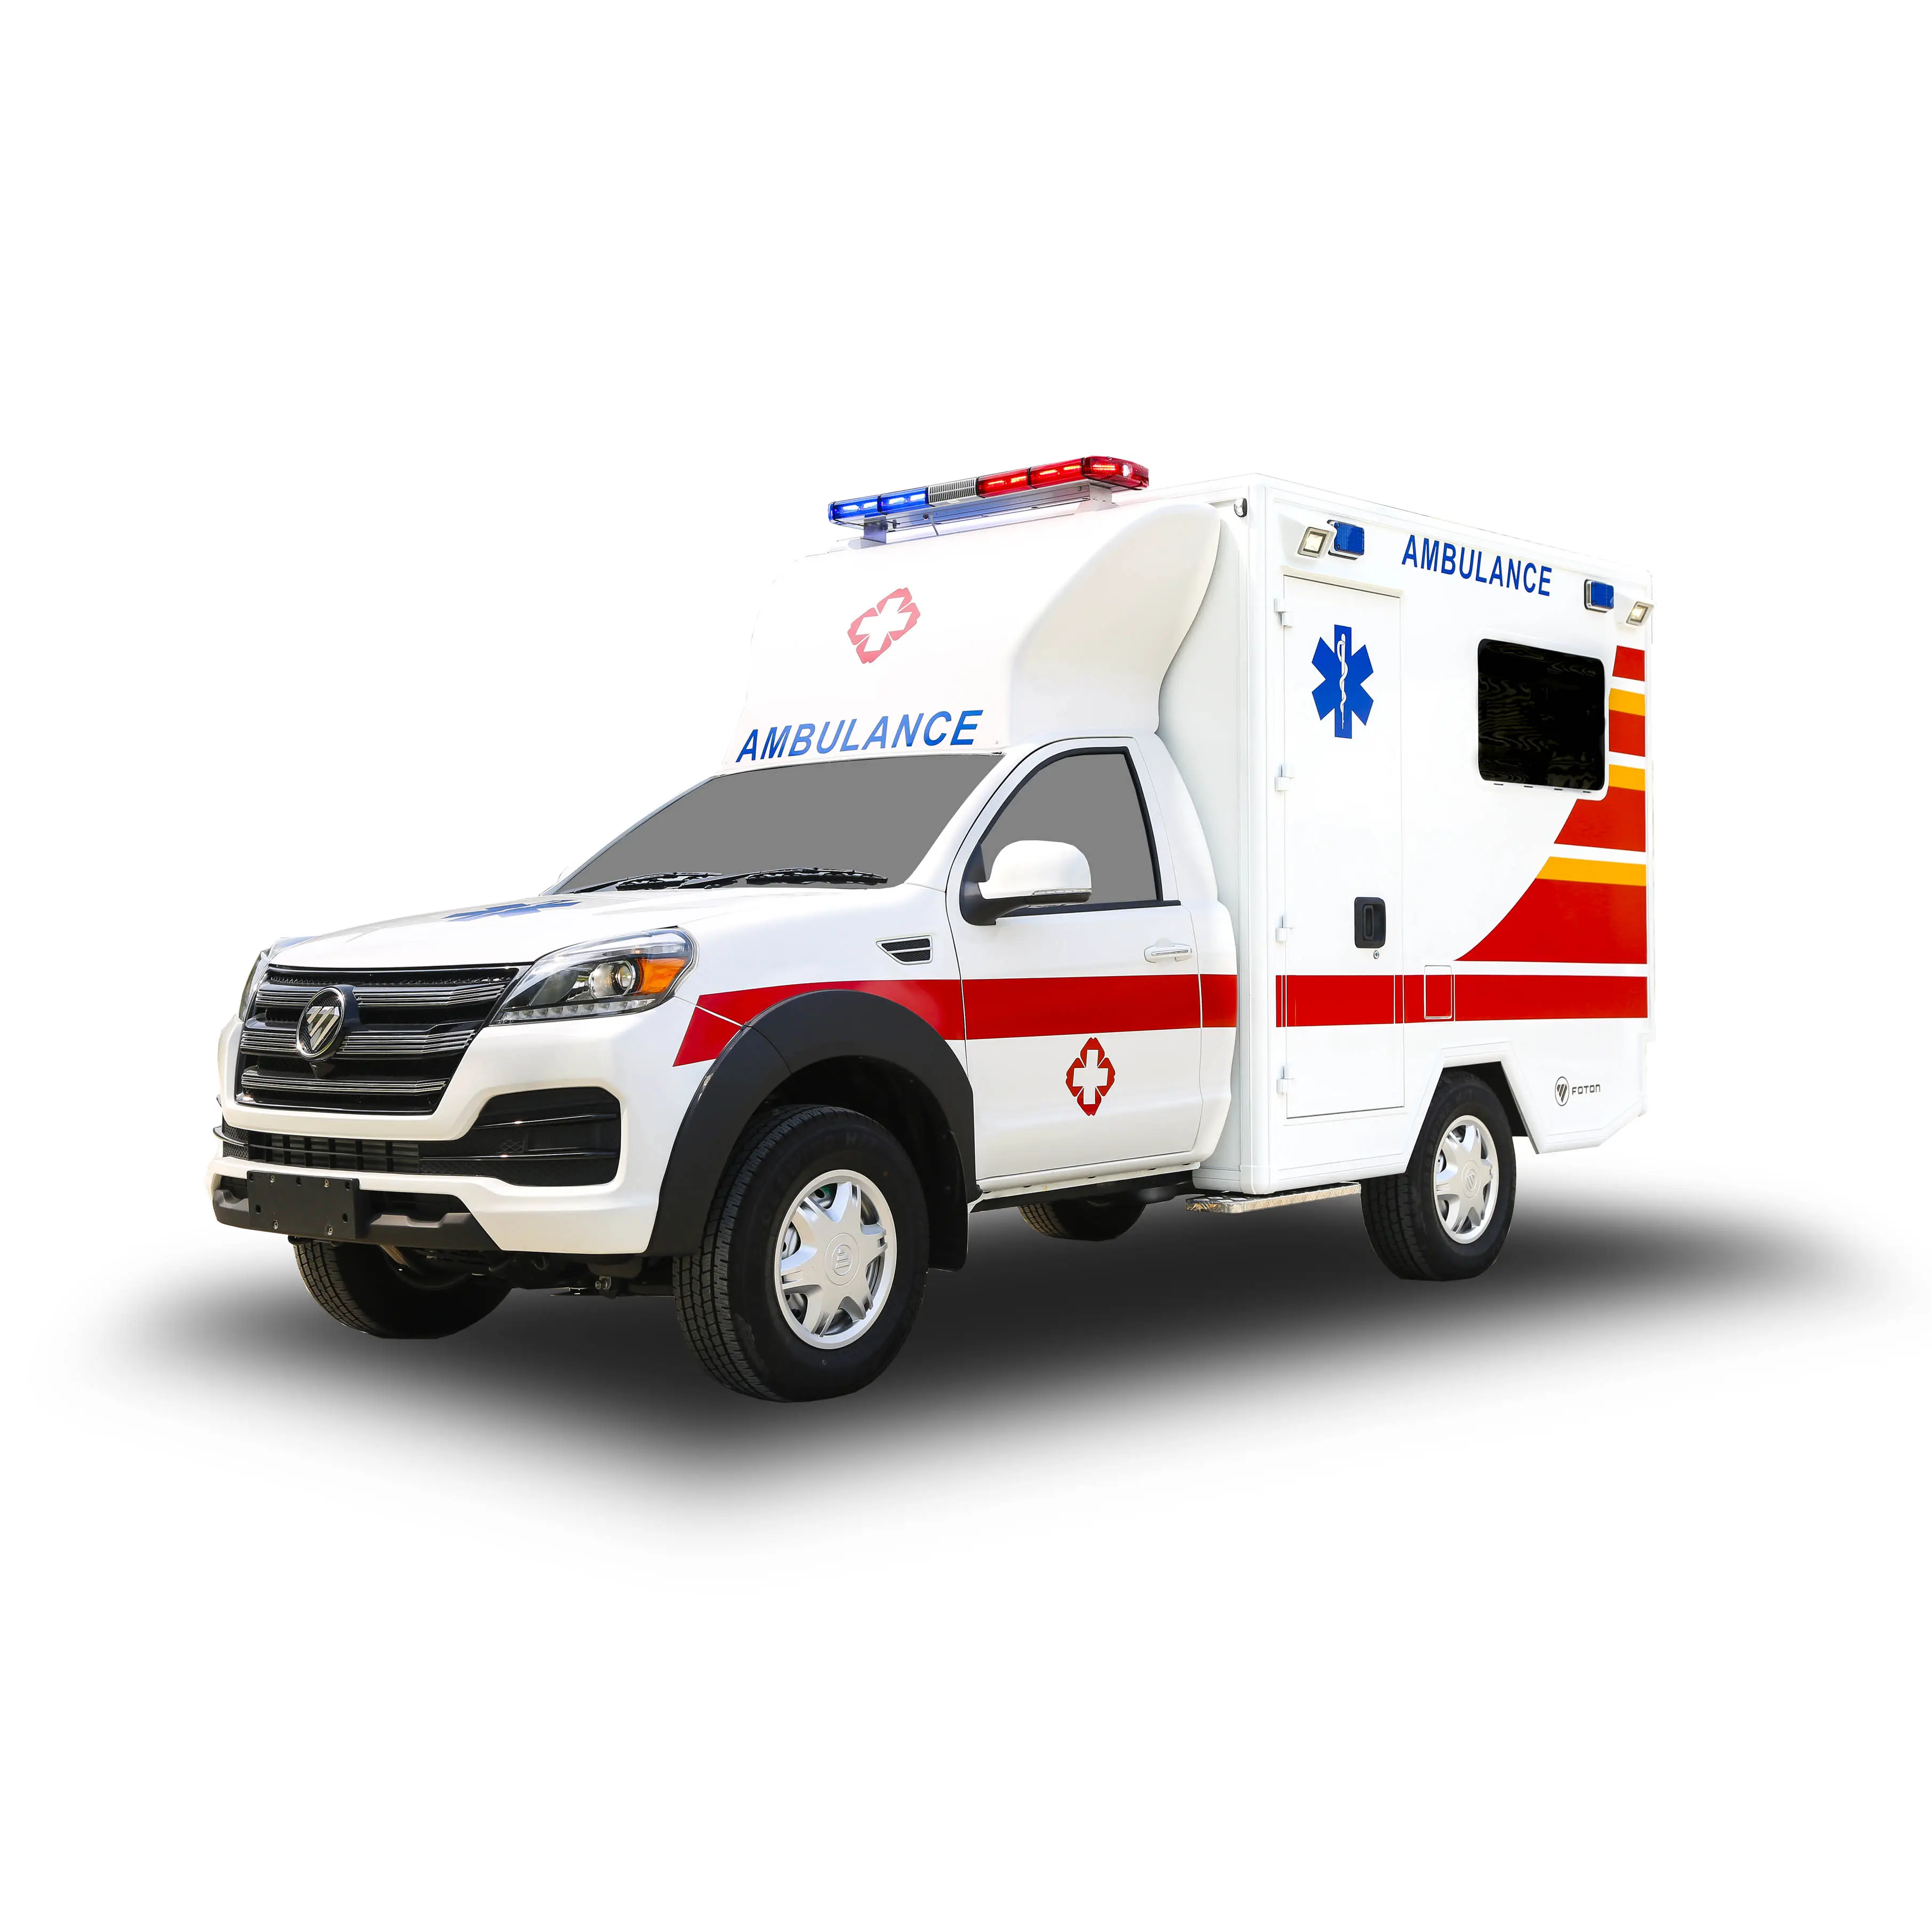 4x4 foton ambulância veículo monitoramento de emergência, emergência, médico, hospital, ambulância, carro, preço para venda